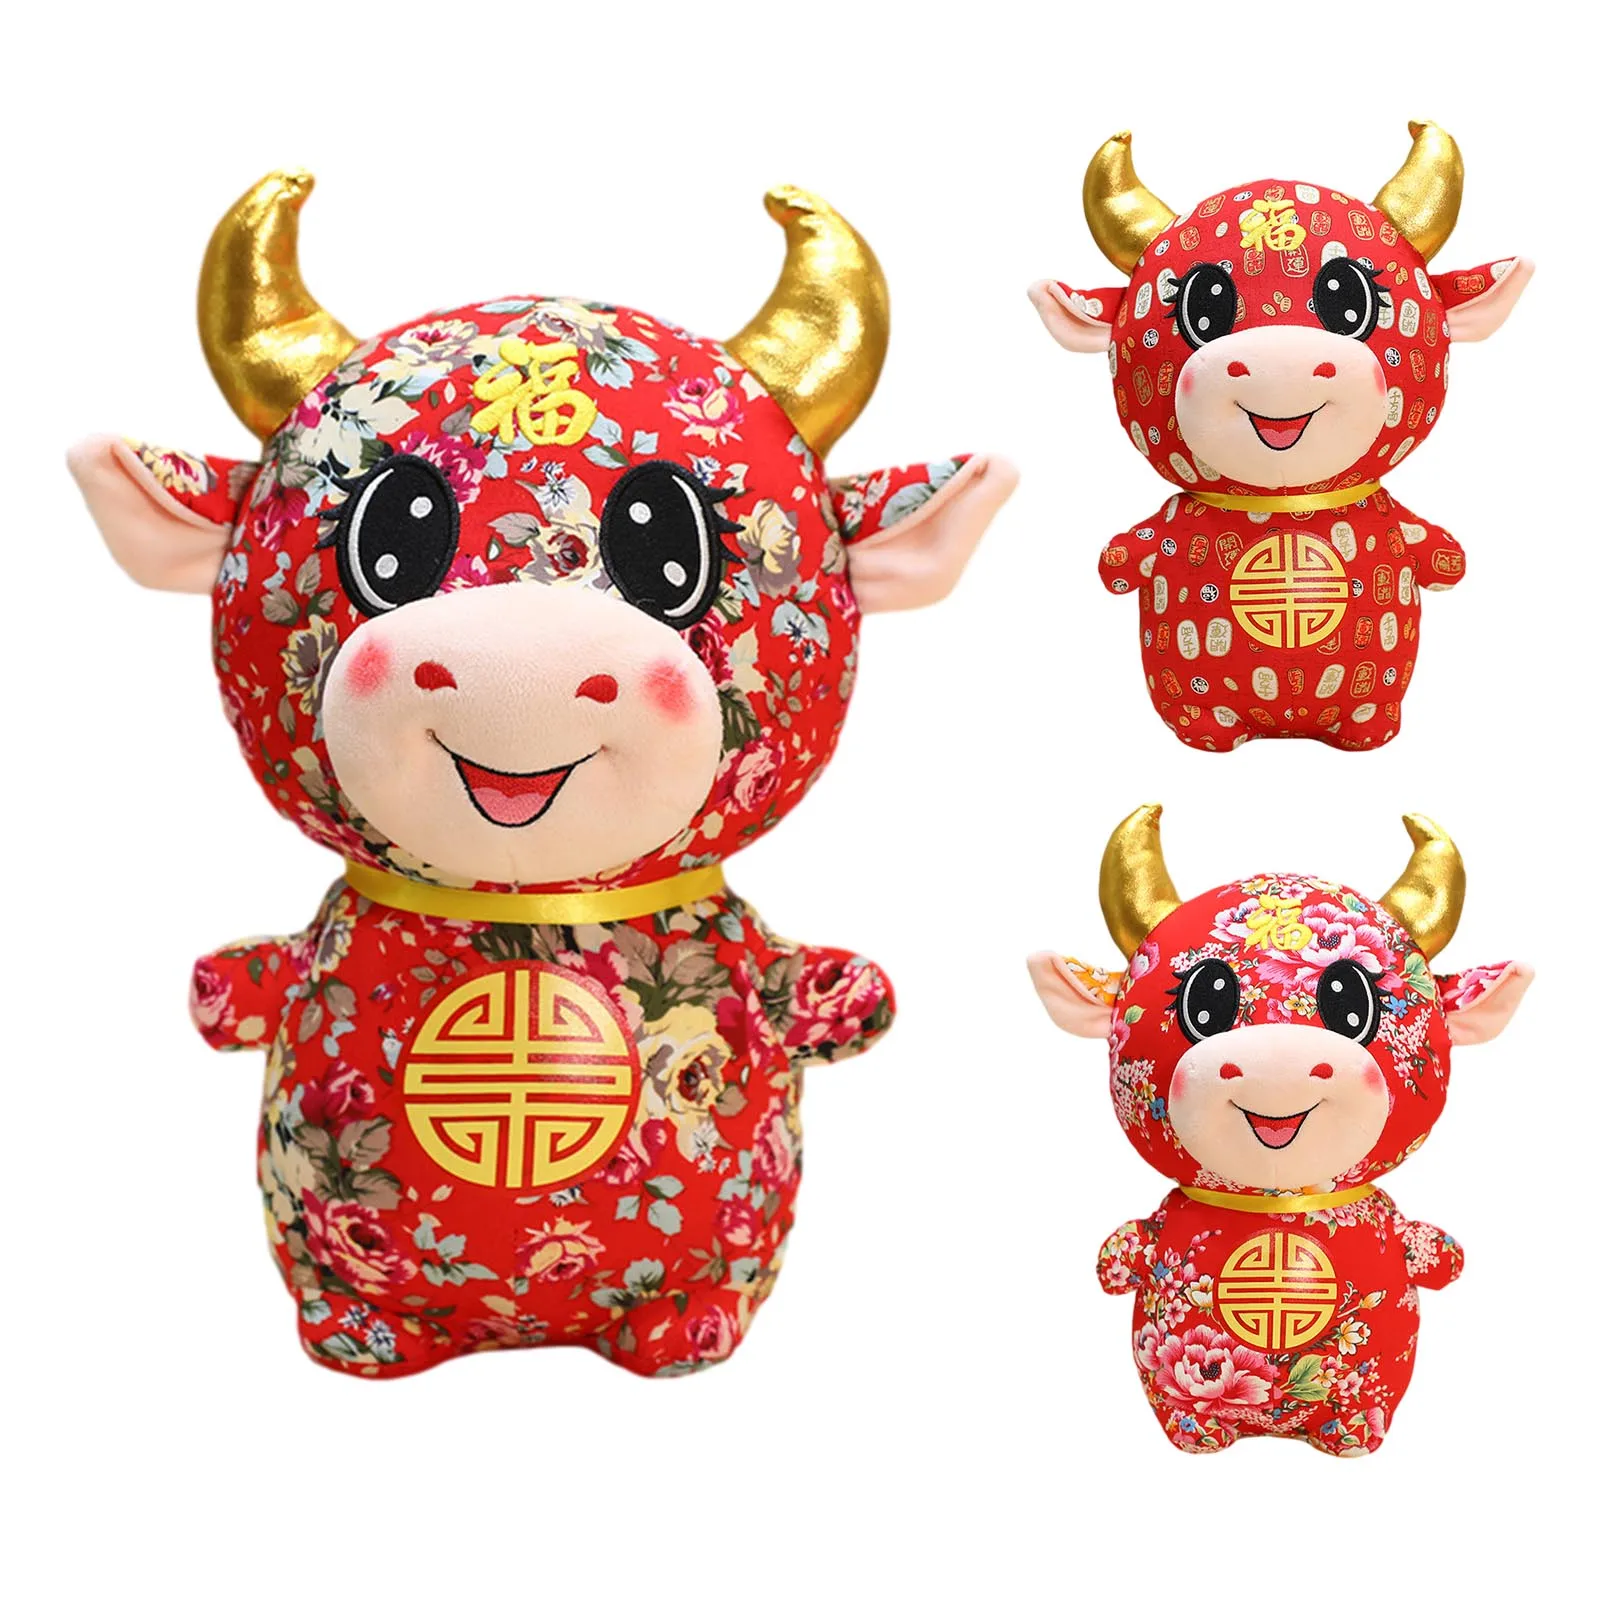 

23 талисман, кукла 2021, китайская лампа, крупный рогатый скот, искусственная корова с красным молоком, мягкая кукла для детей, Новогодний подар...